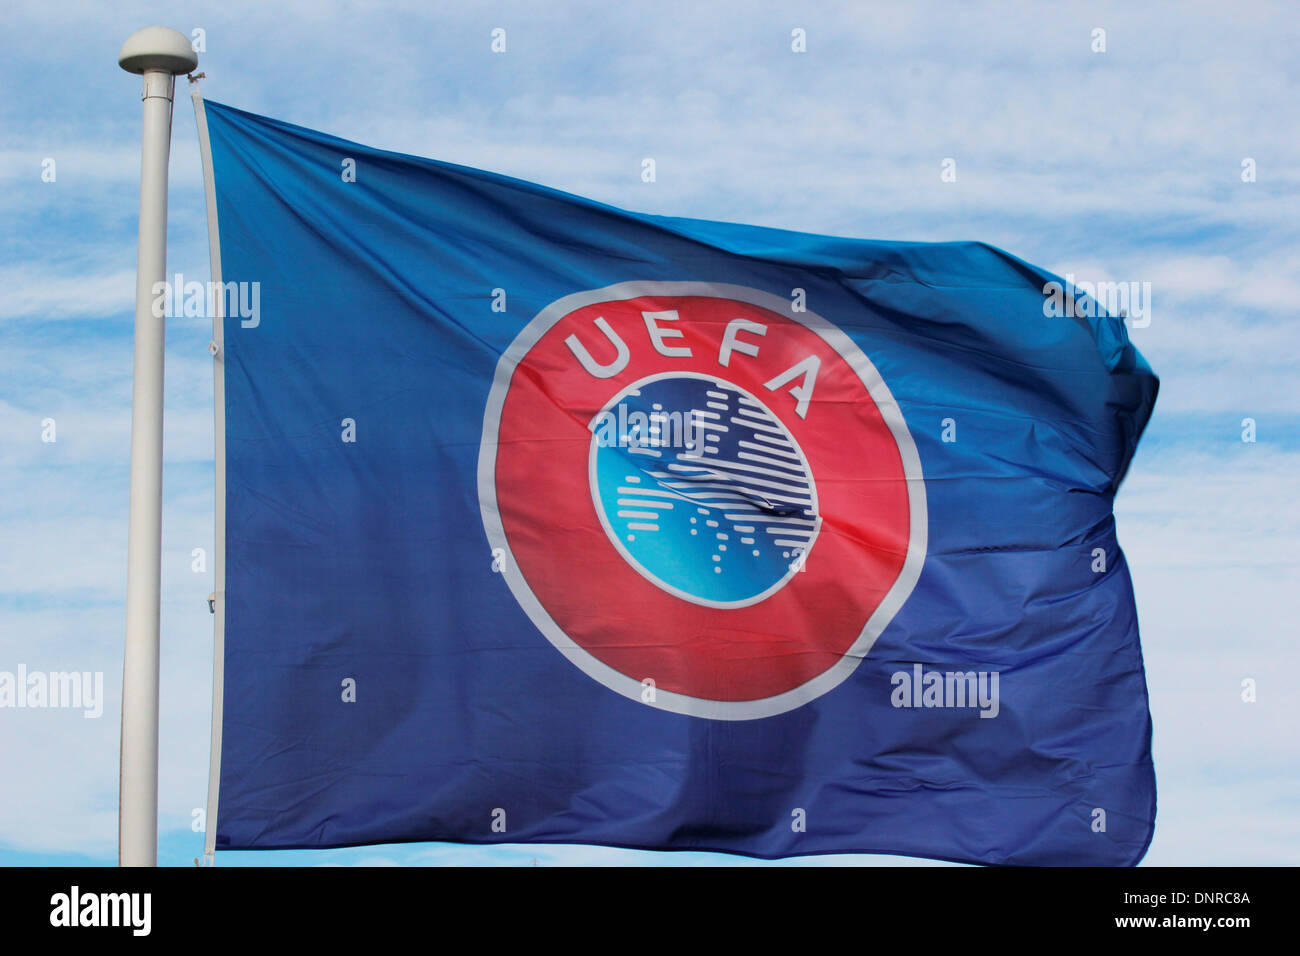 UEFA Flag and emblem Stock Photo